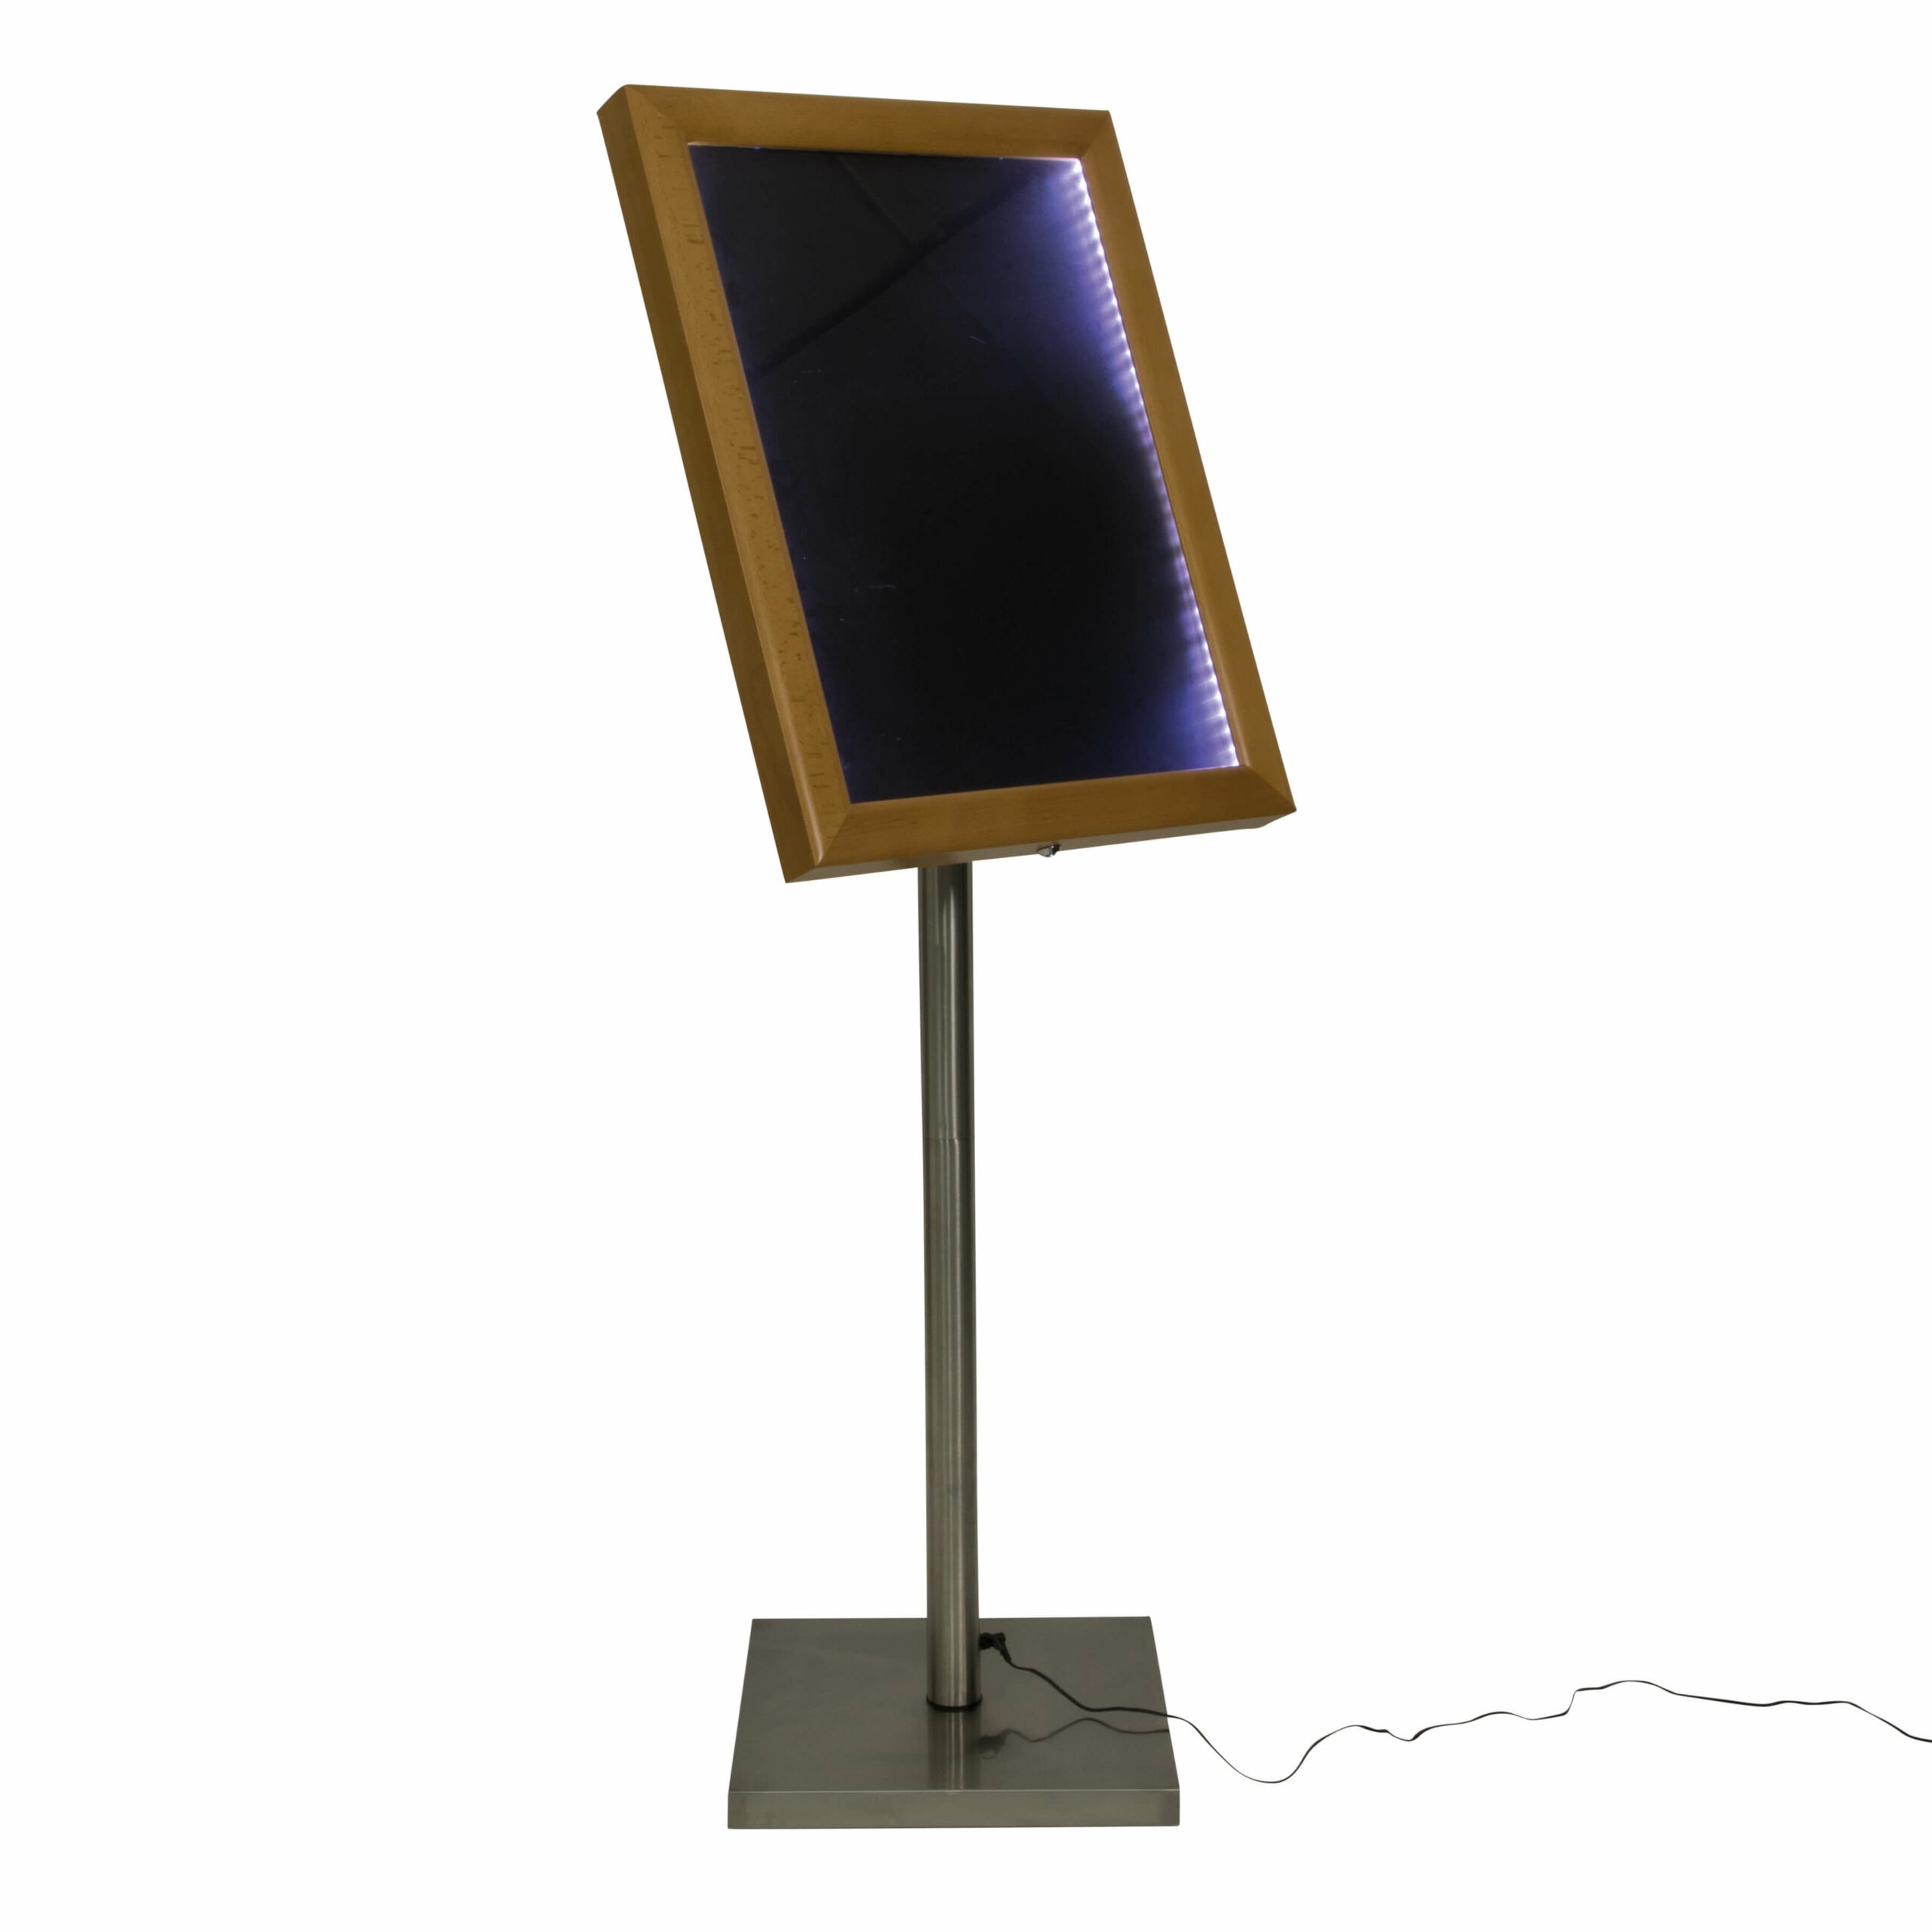 Šviesaus medžio faktūros meniu stovas su LED apšvietimu MCS-4A4-WLTE-SET